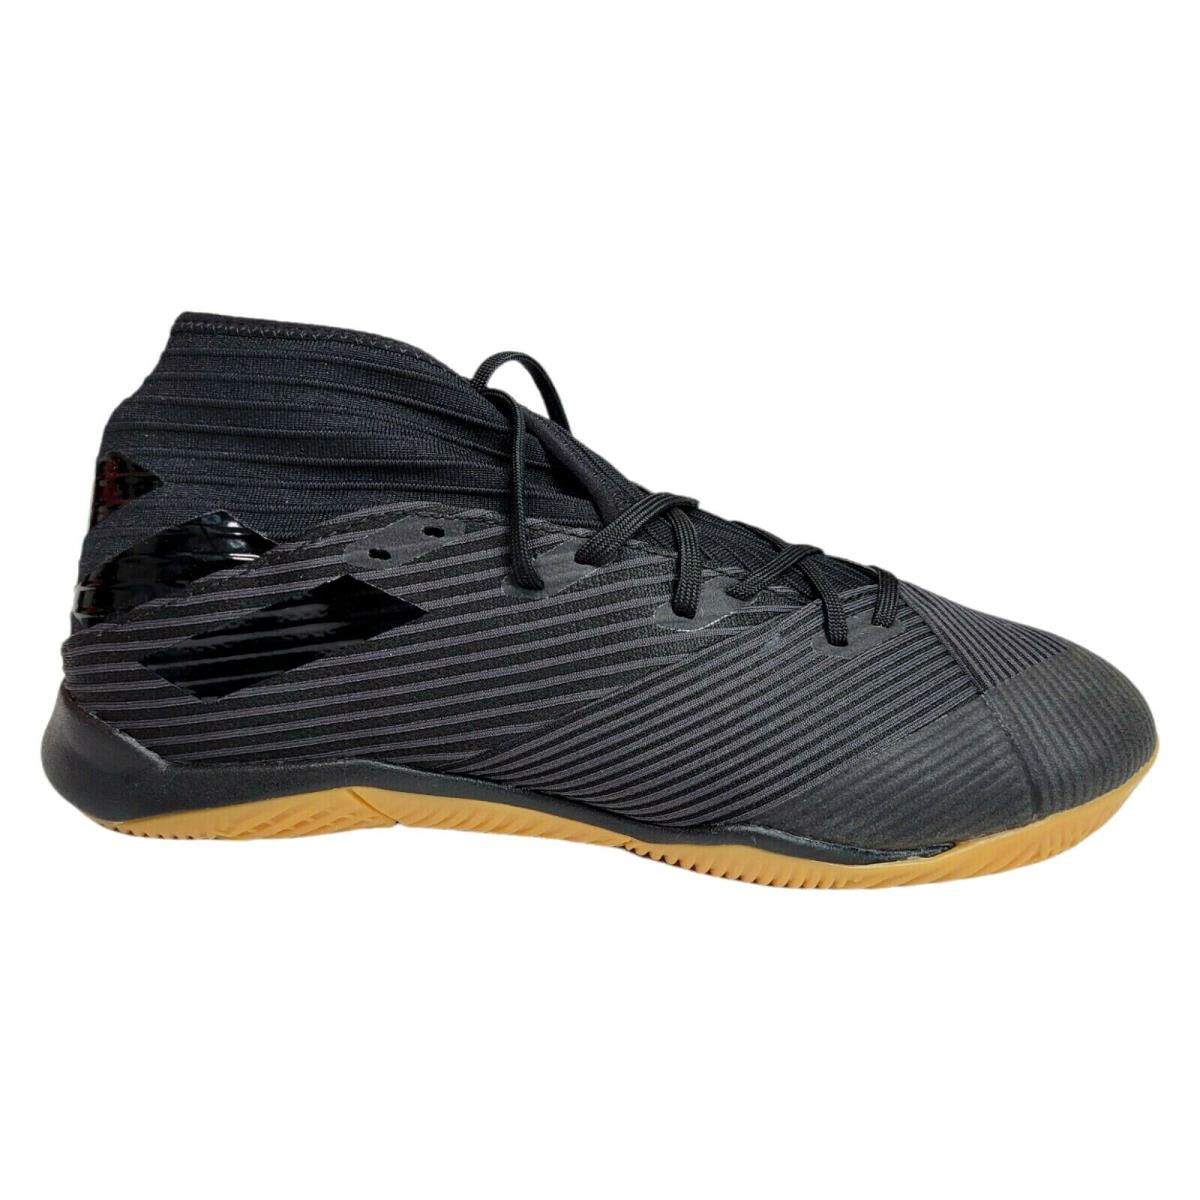 Adidas Mens 7.5 10.5 Nemeziz 19.3 Indoor Soccer Cleats Shoes Boot Black F34413